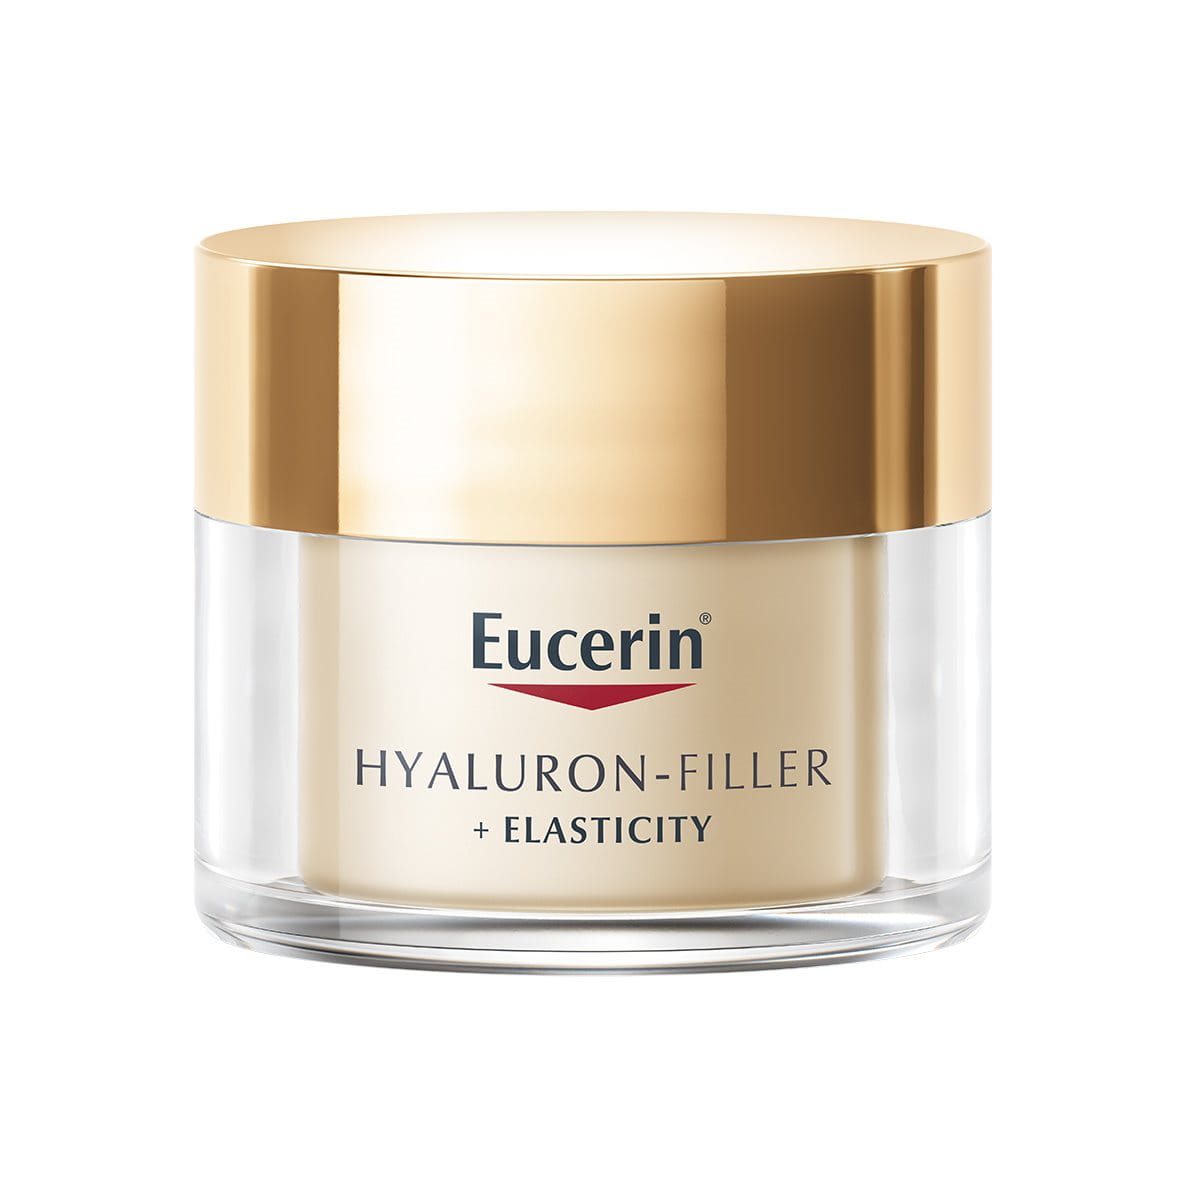 Eucerin Hyaluron-Filler + Elasticity Crema Giorno SPF 30: migliore crema idratante per pelli mature